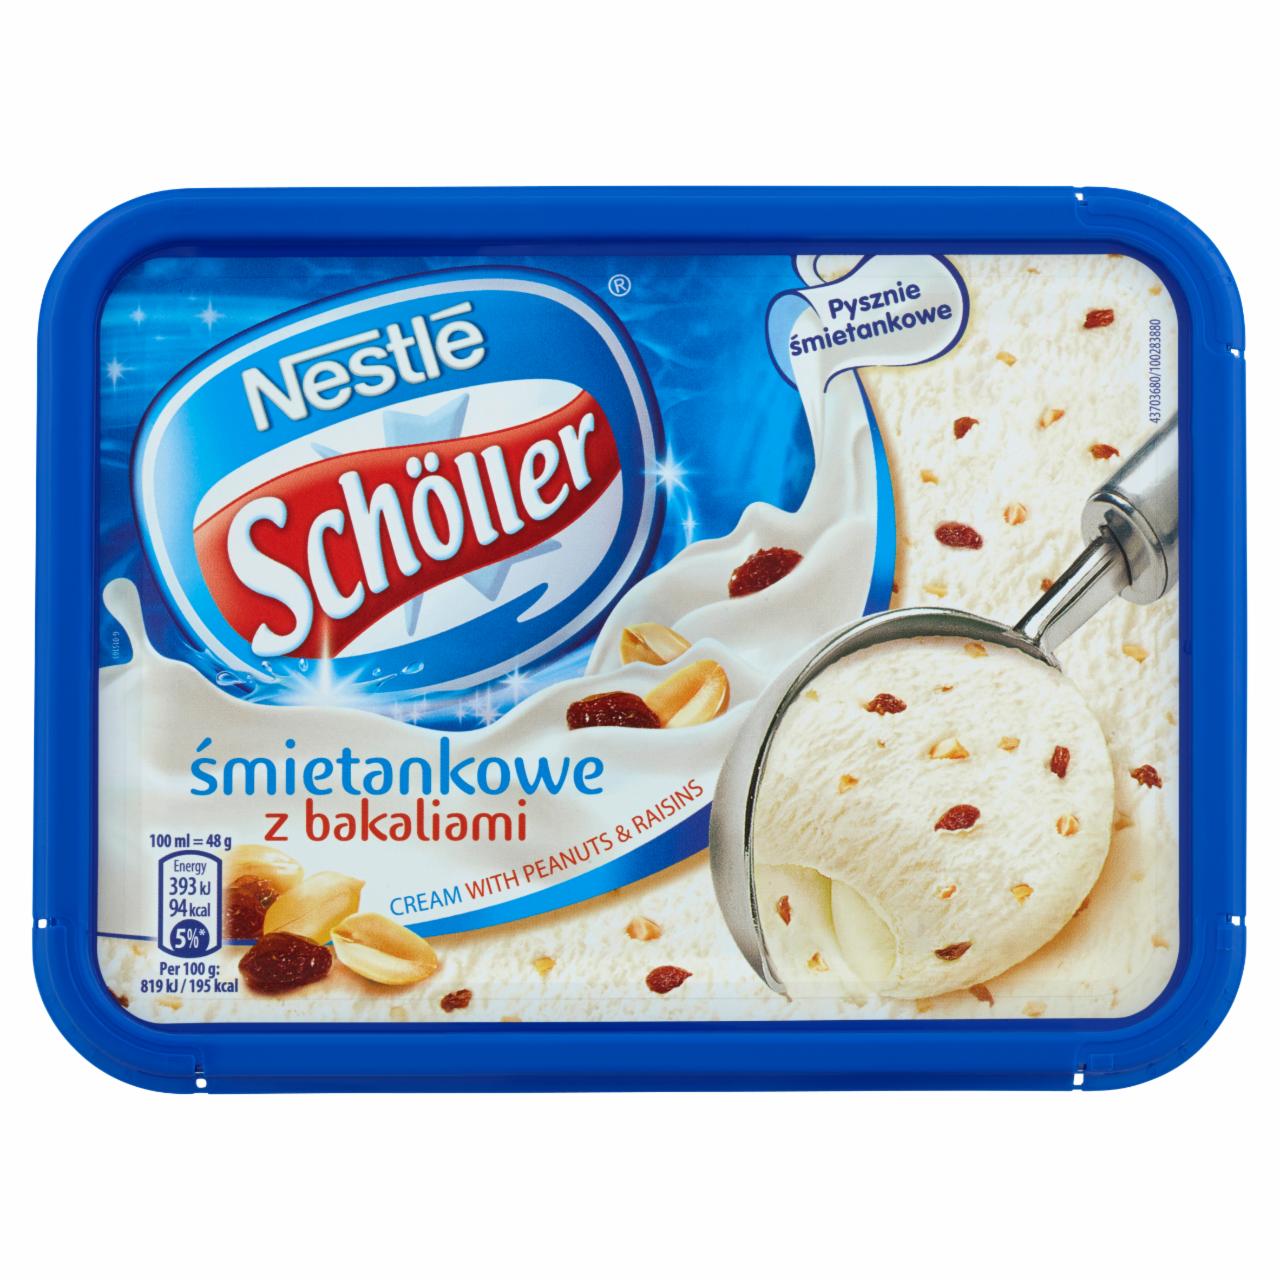 Zdjęcia - Nestlé Schöller Lody śmietankowe z bakaliami 1000 ml